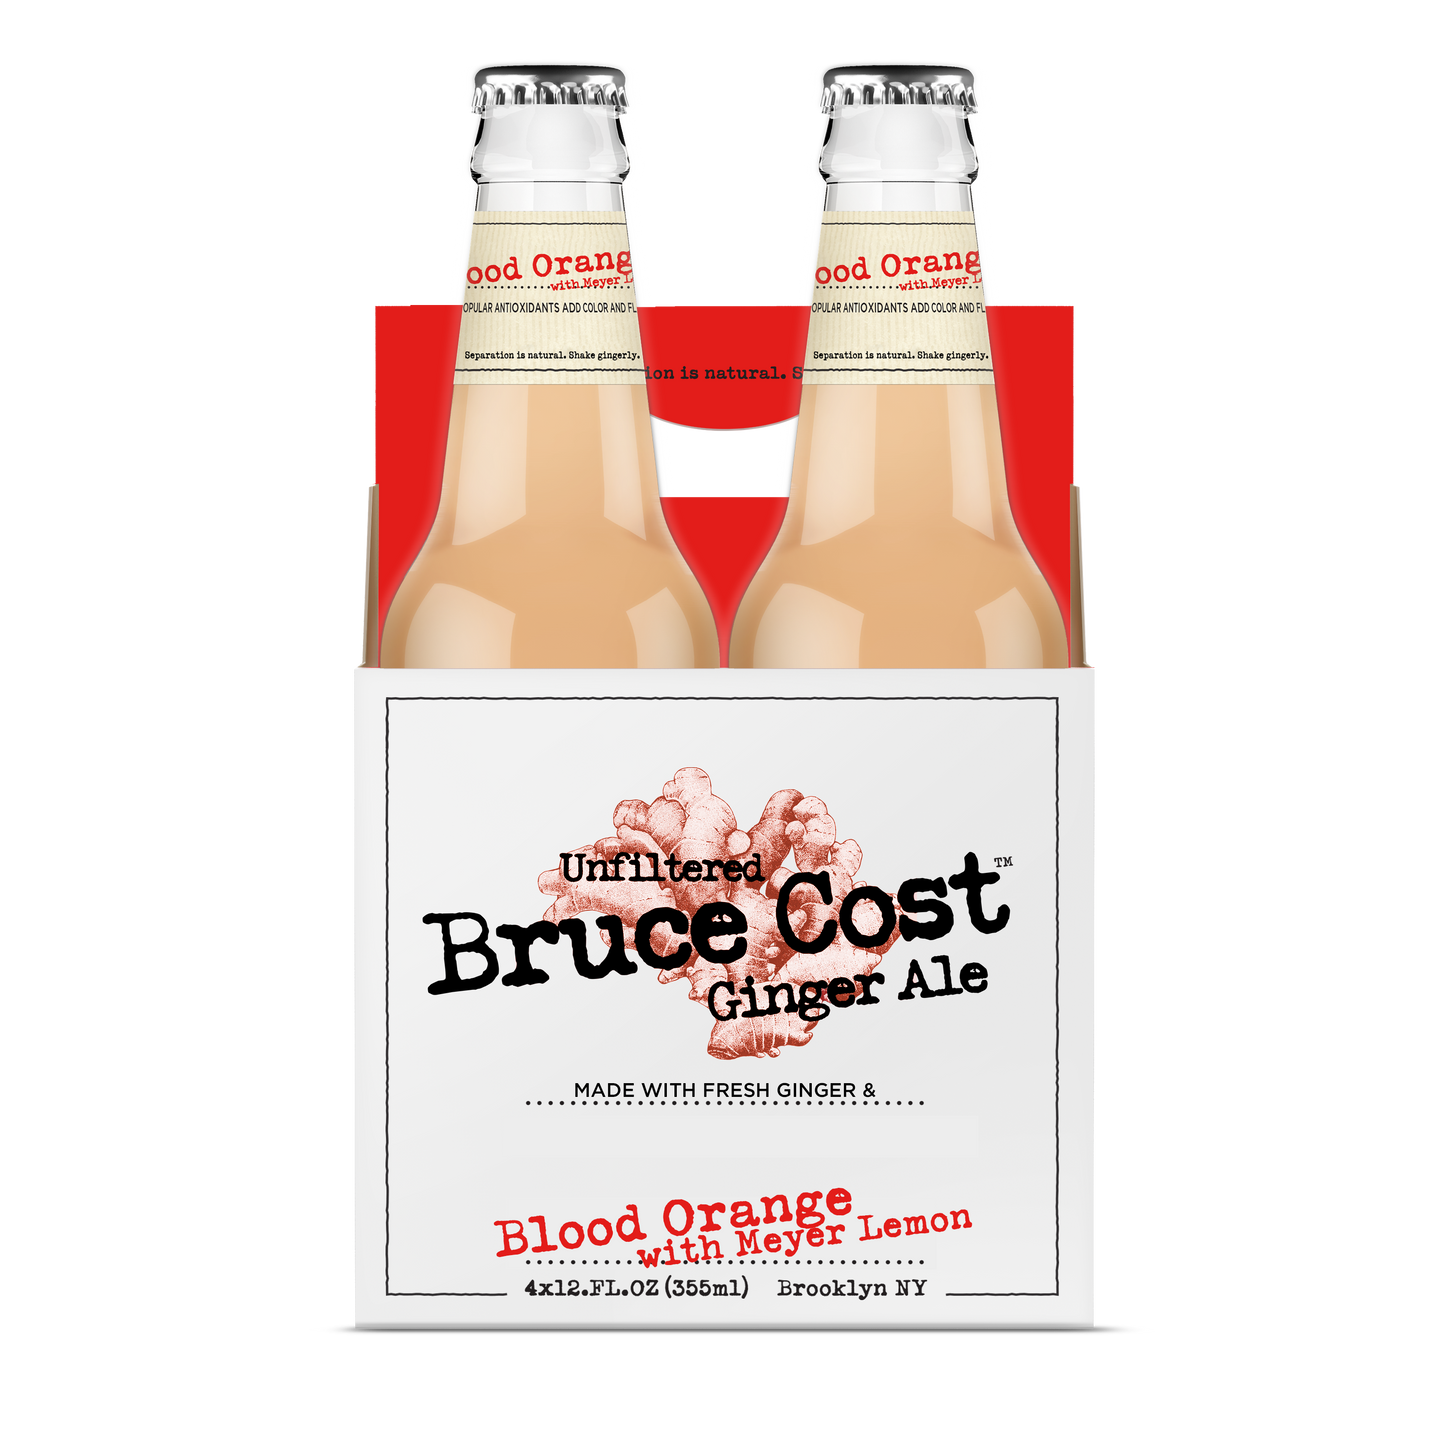 Bruce Cost Ginger Ale - Blood Orange with Meyer Lemon